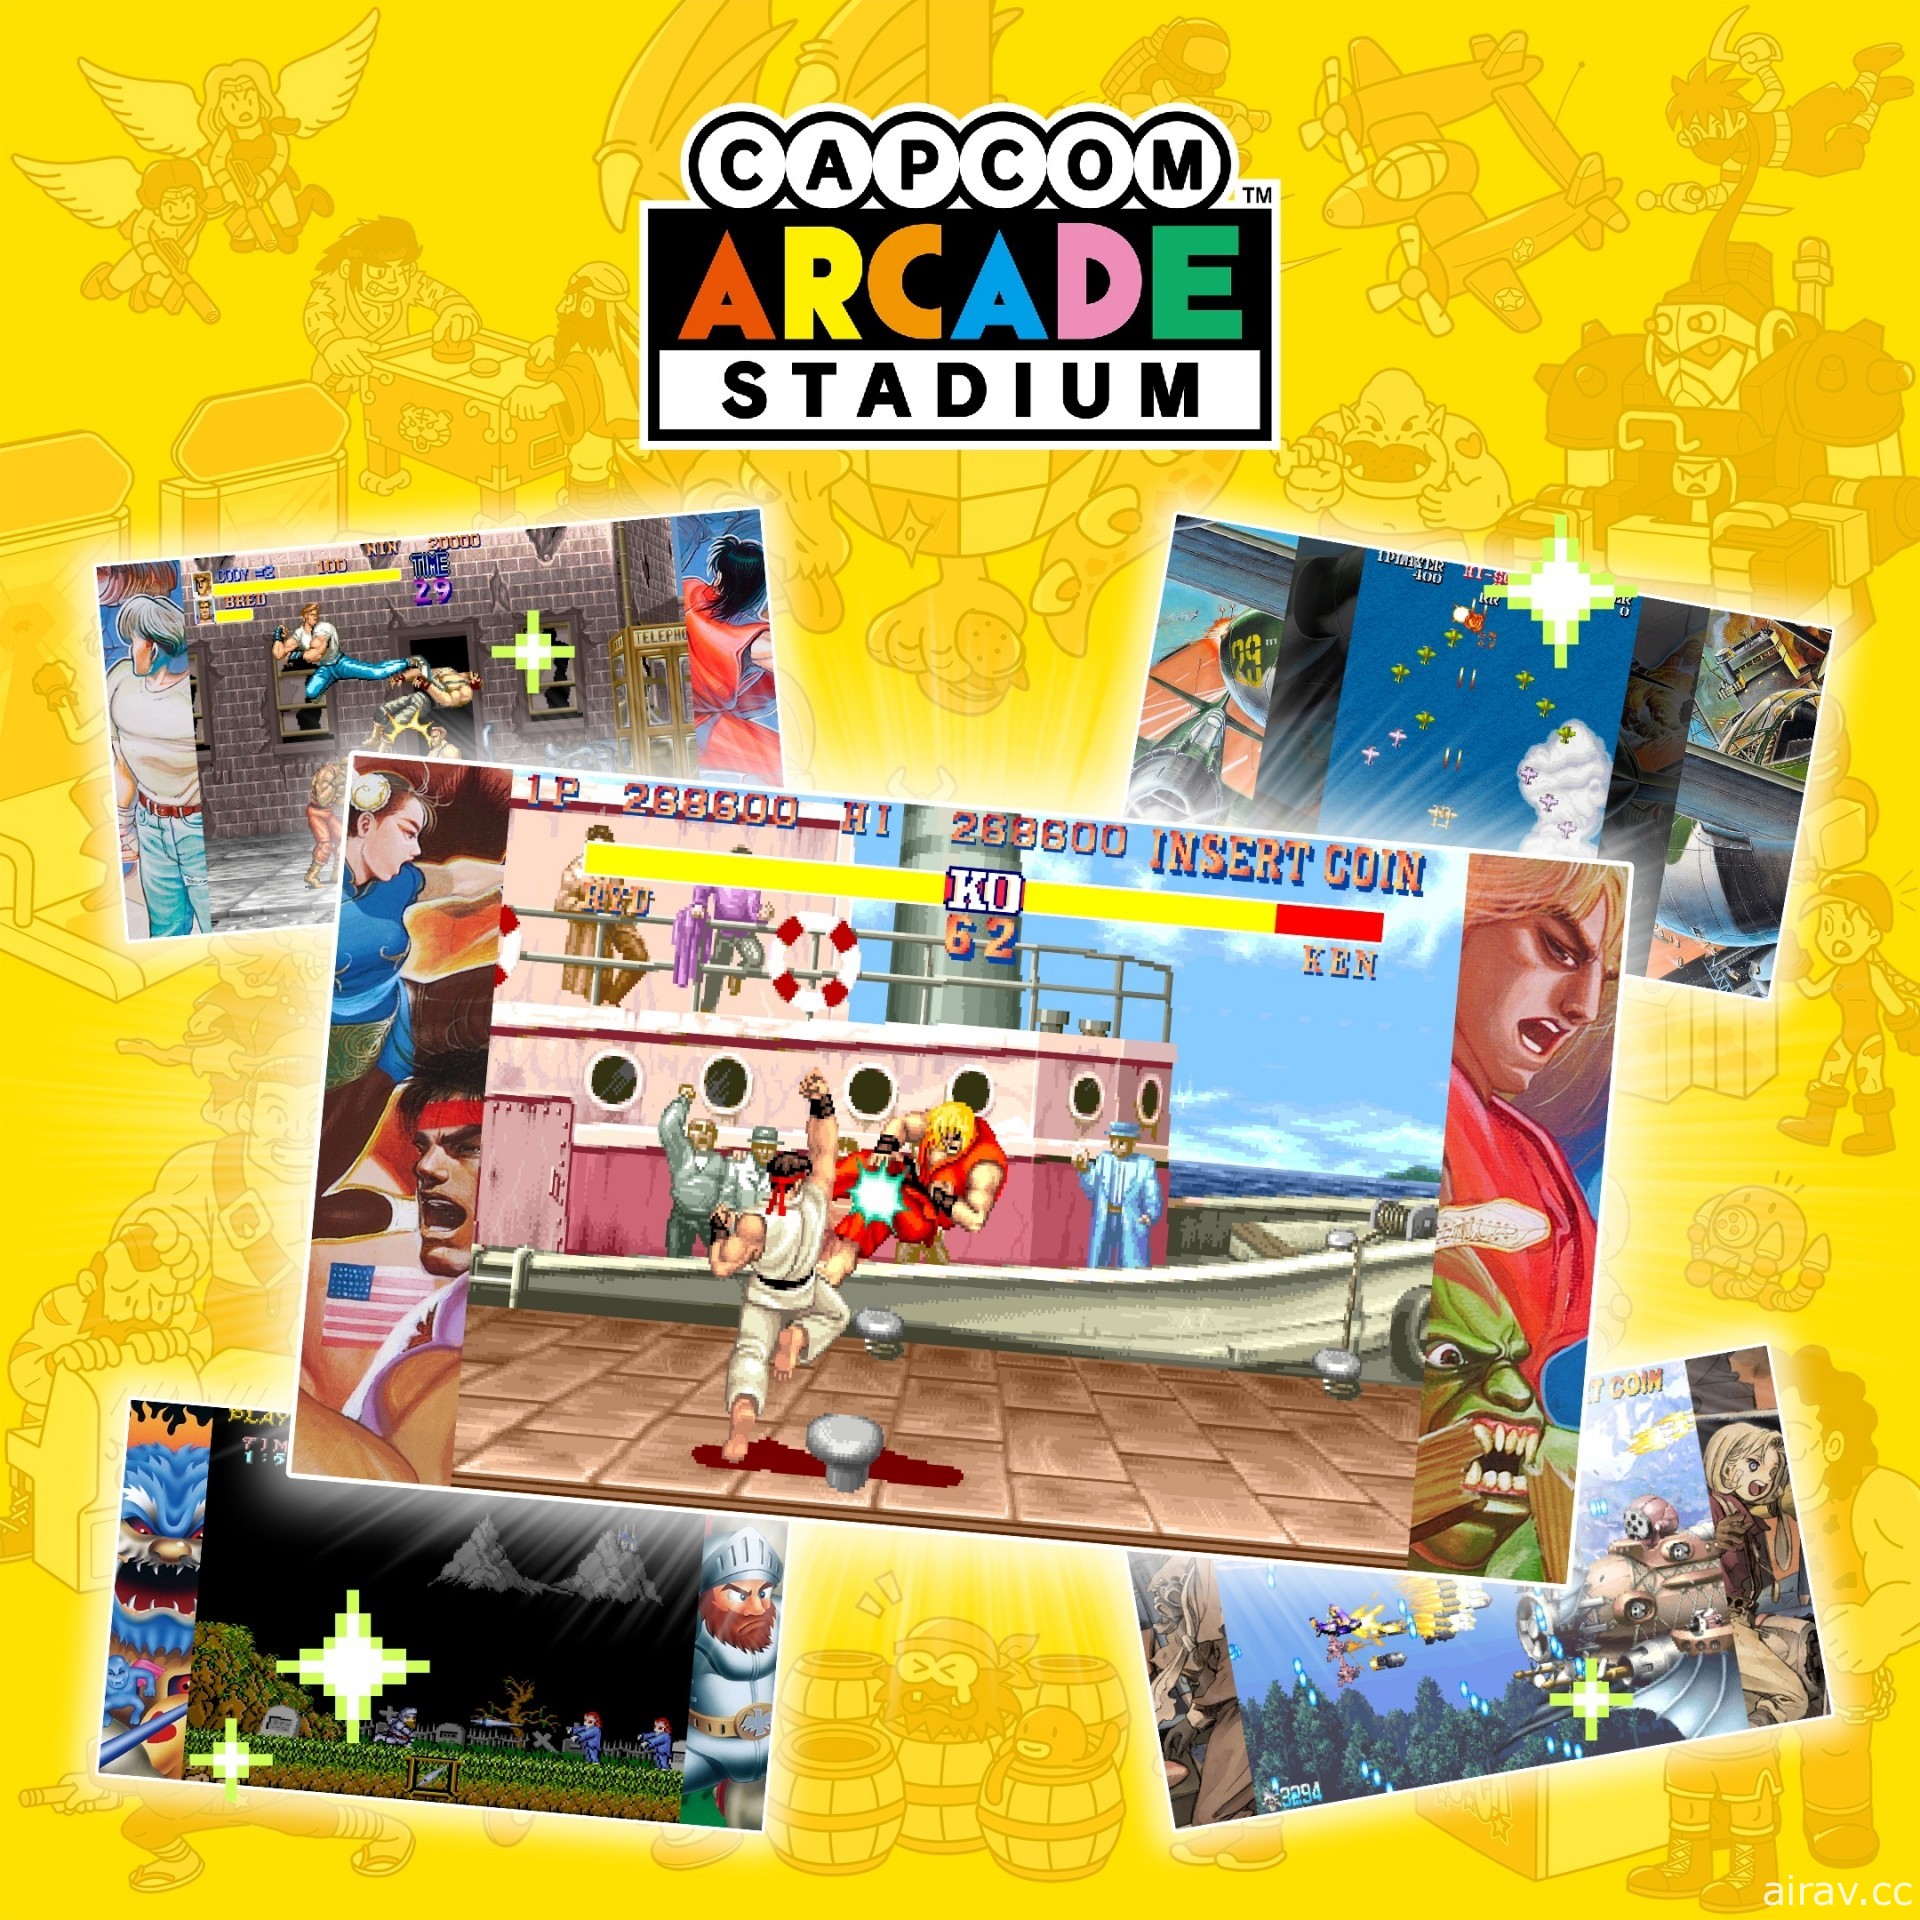 經典合輯《Capcom Arcade Stadium》PS4、Xbox One 與 Steam 版 5 月 25 日推出